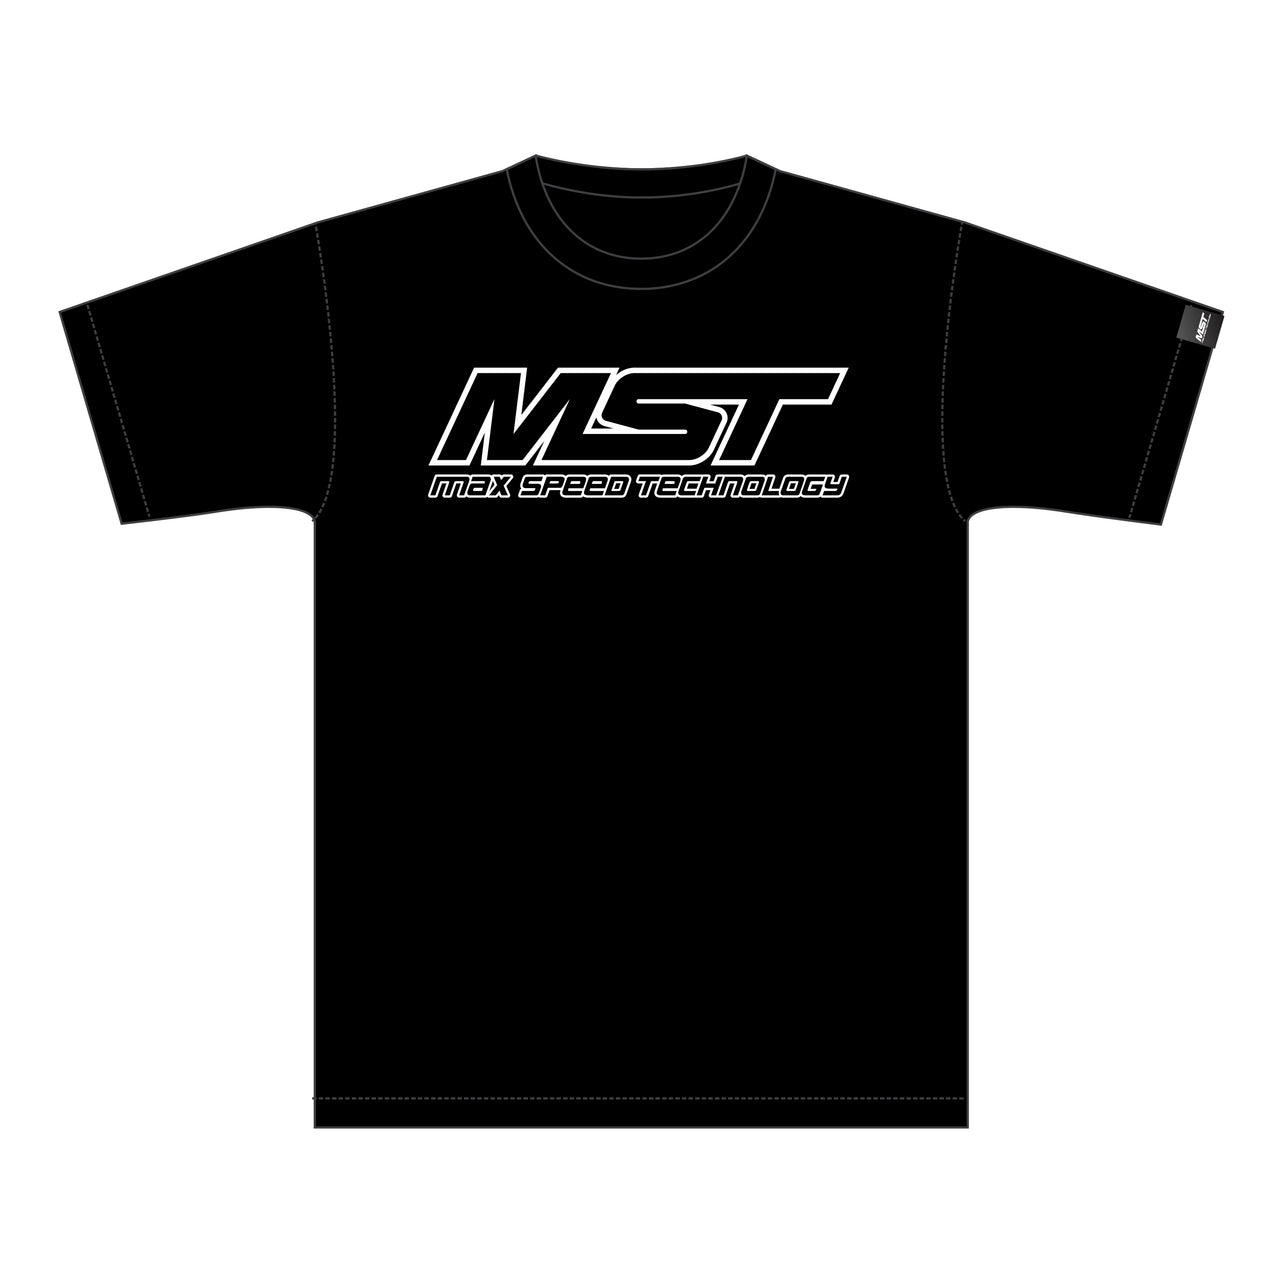 910022-L Camiseta MST (KMW) L